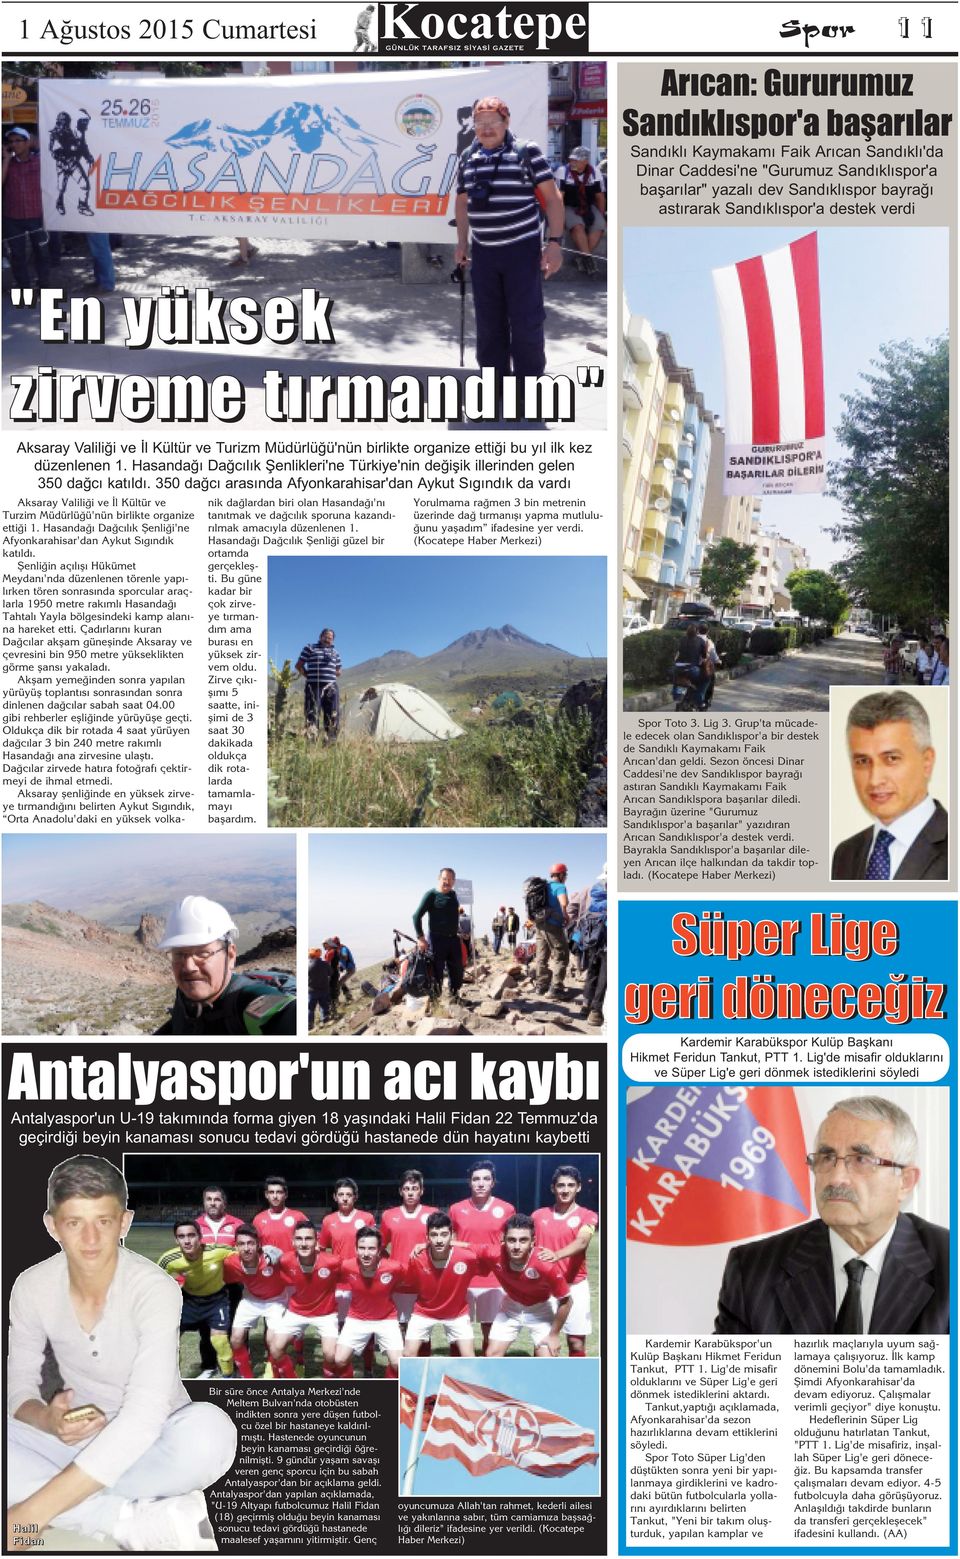 Hasandağı Dağcılık Şenlikleri'ne Türkiye'nin değişik illerinden gelen 350 dağcı katıldı.